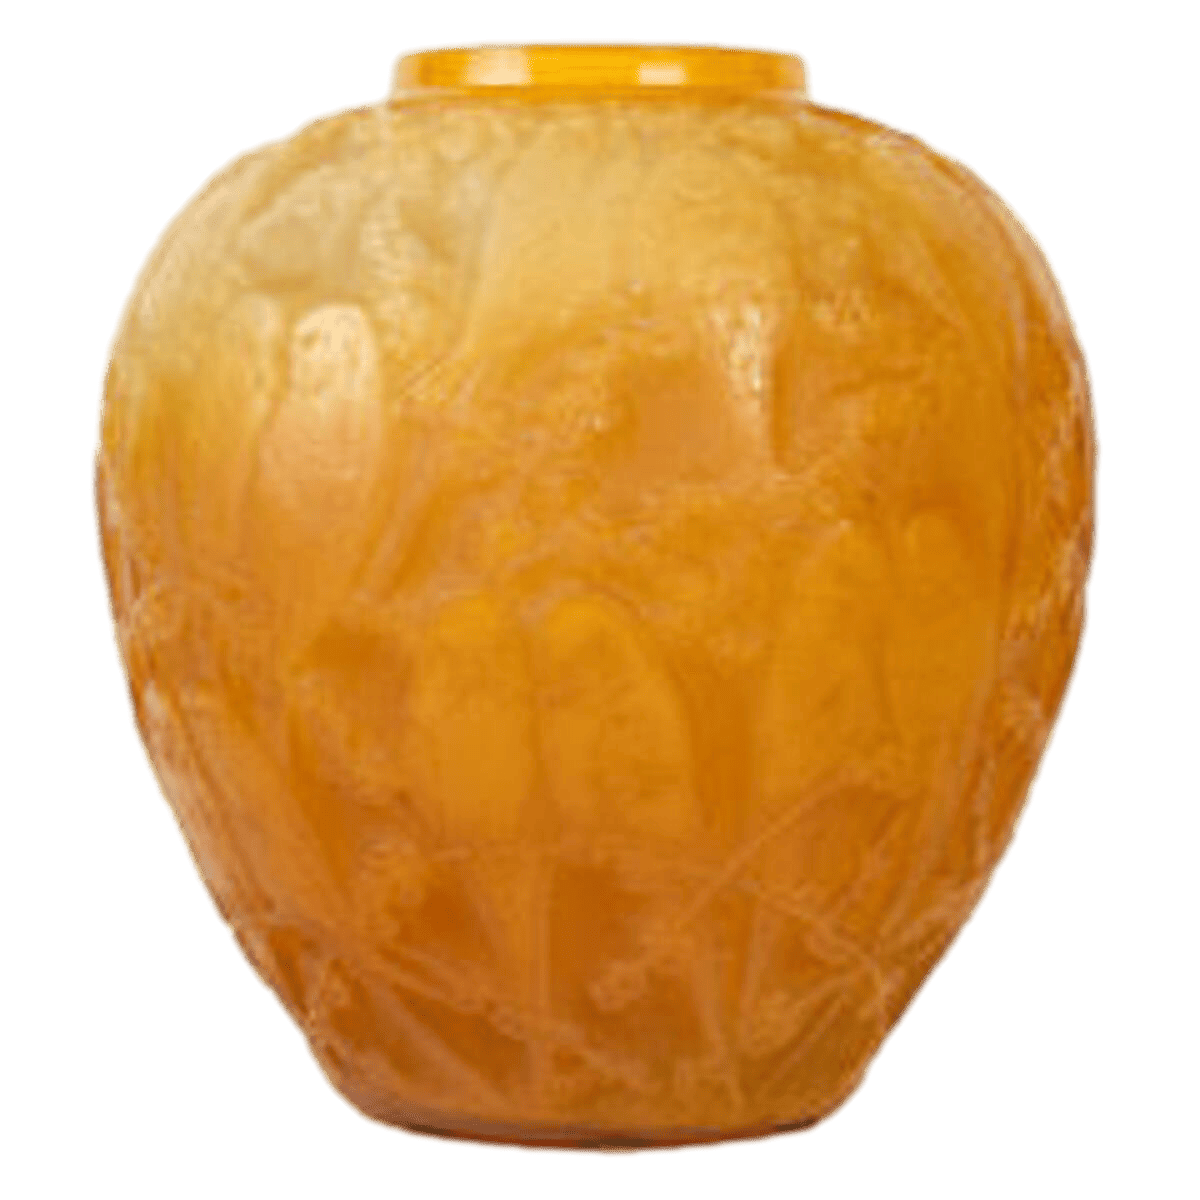 René Lalique, 1919, “Parruches” Butterscotch vase.